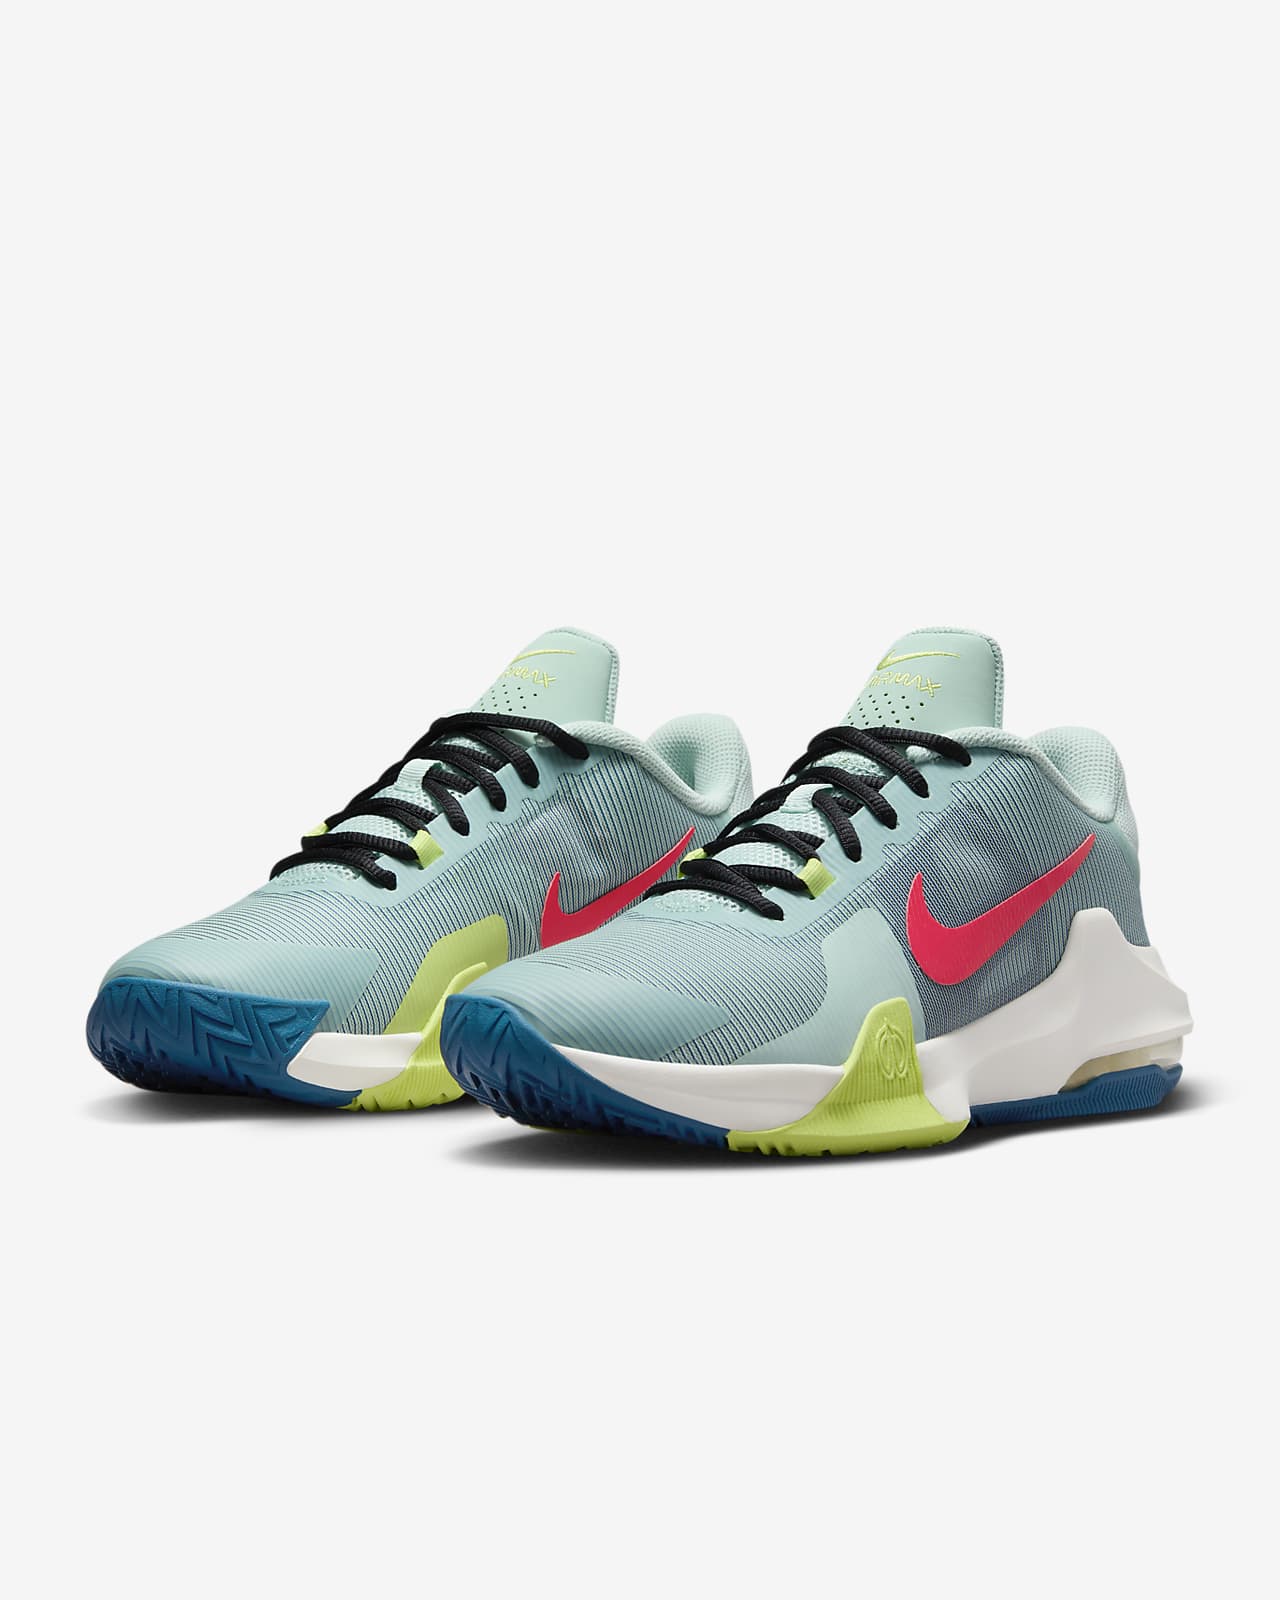 Nike Impact 4 Basketball Shoes.